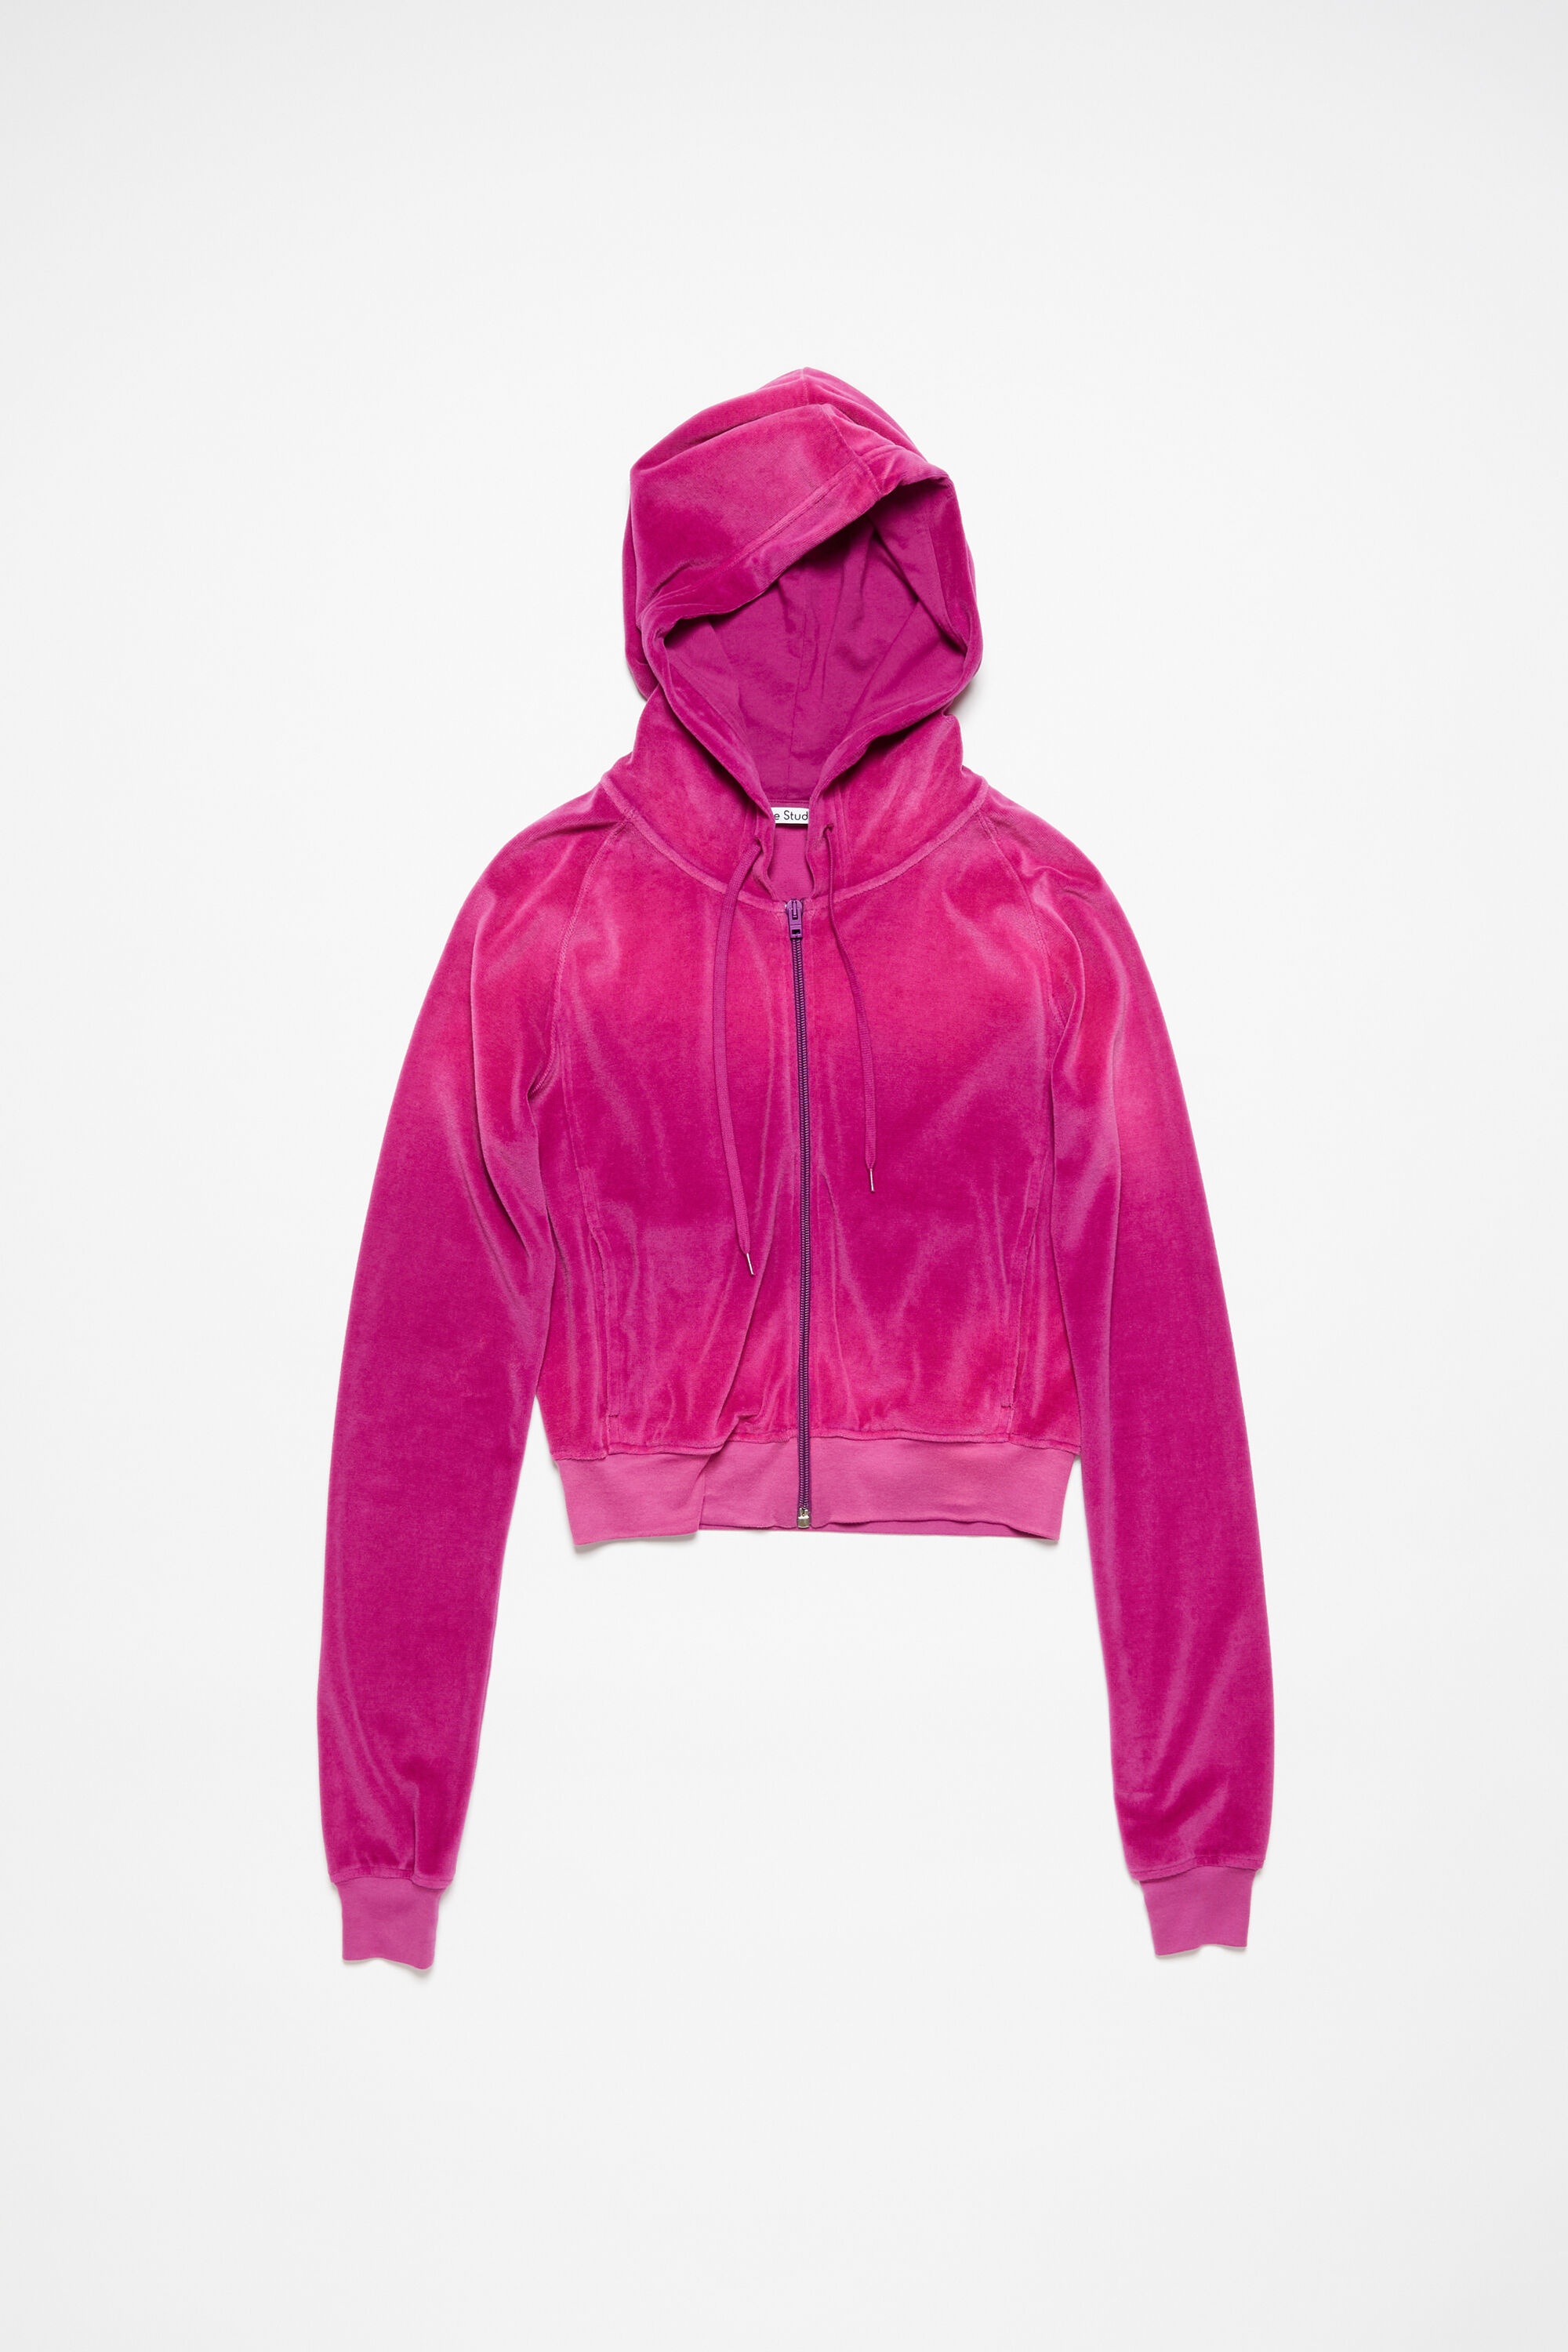 Hooded zip sweater velvet - Magenta pink - 6